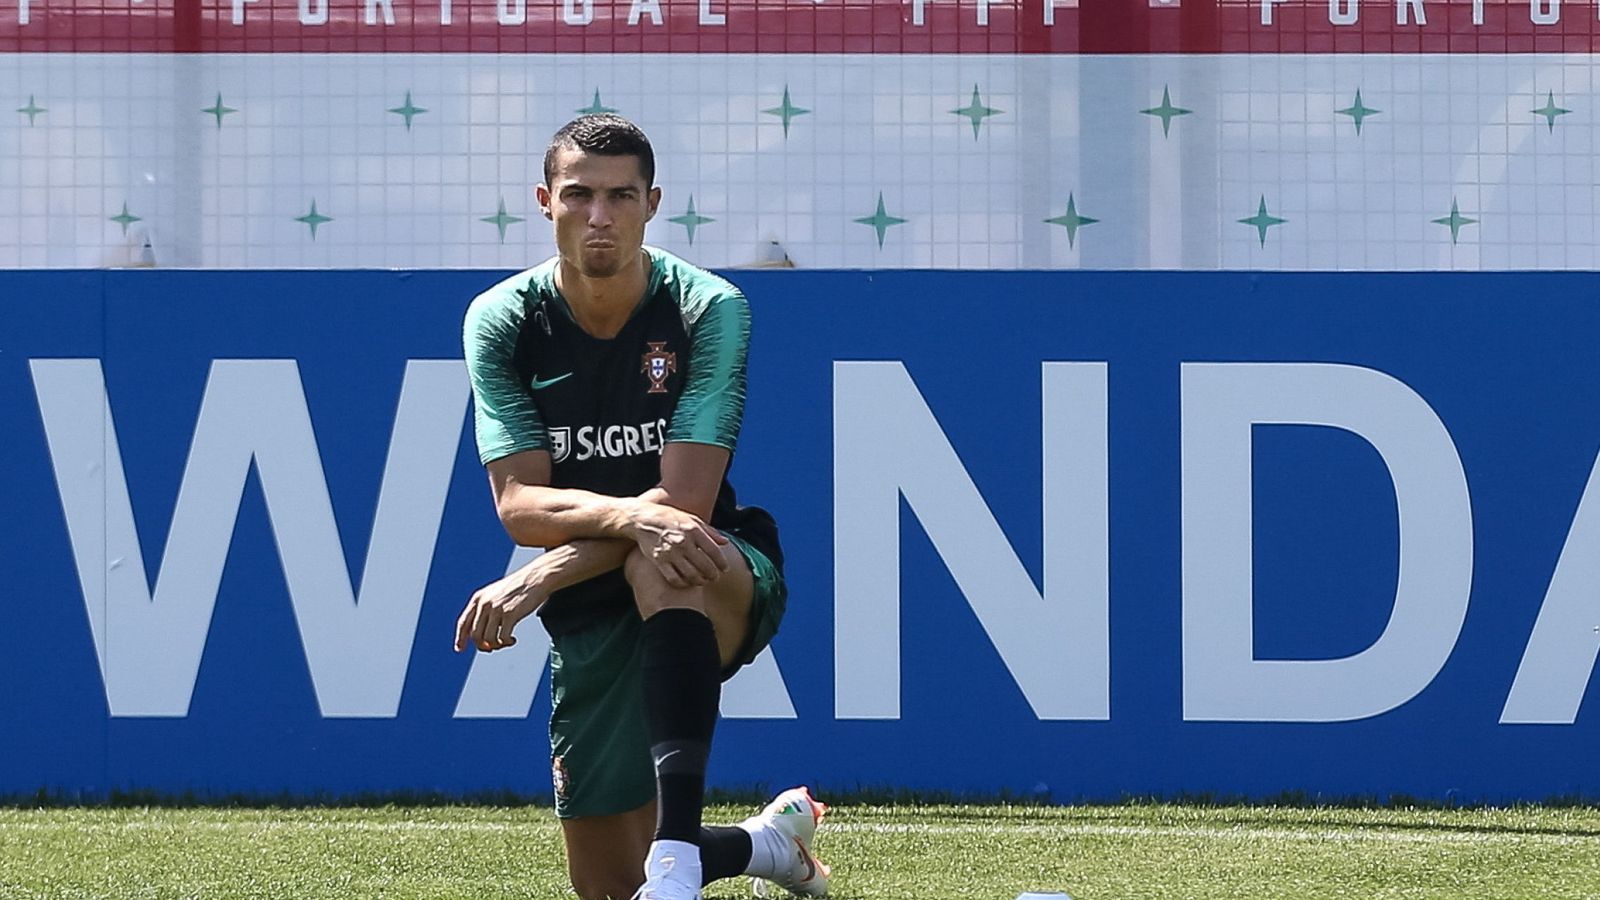 Foto: Cristiano Ronaldo, con una incipiente perilla, durante el entrenamiento con Portugal. (Efe)